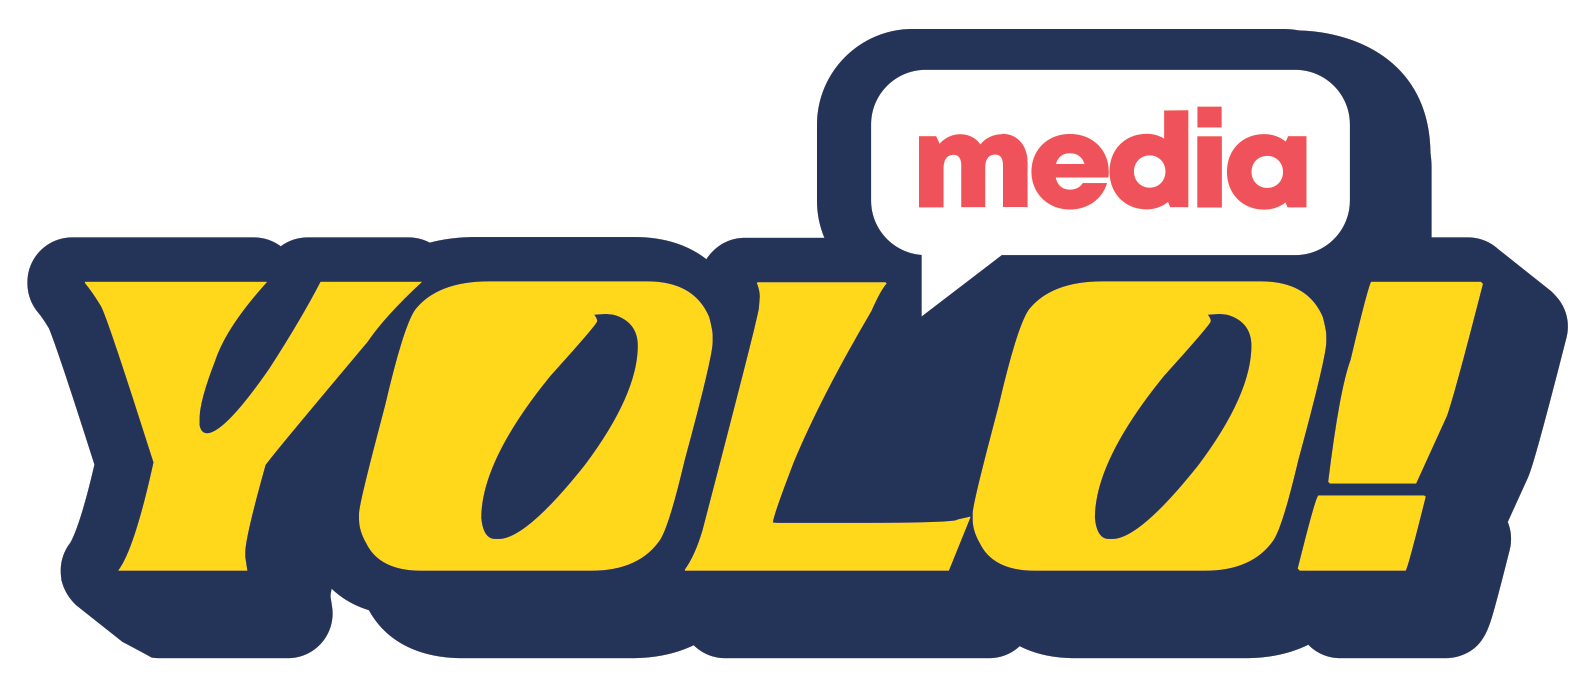 Yolo Media